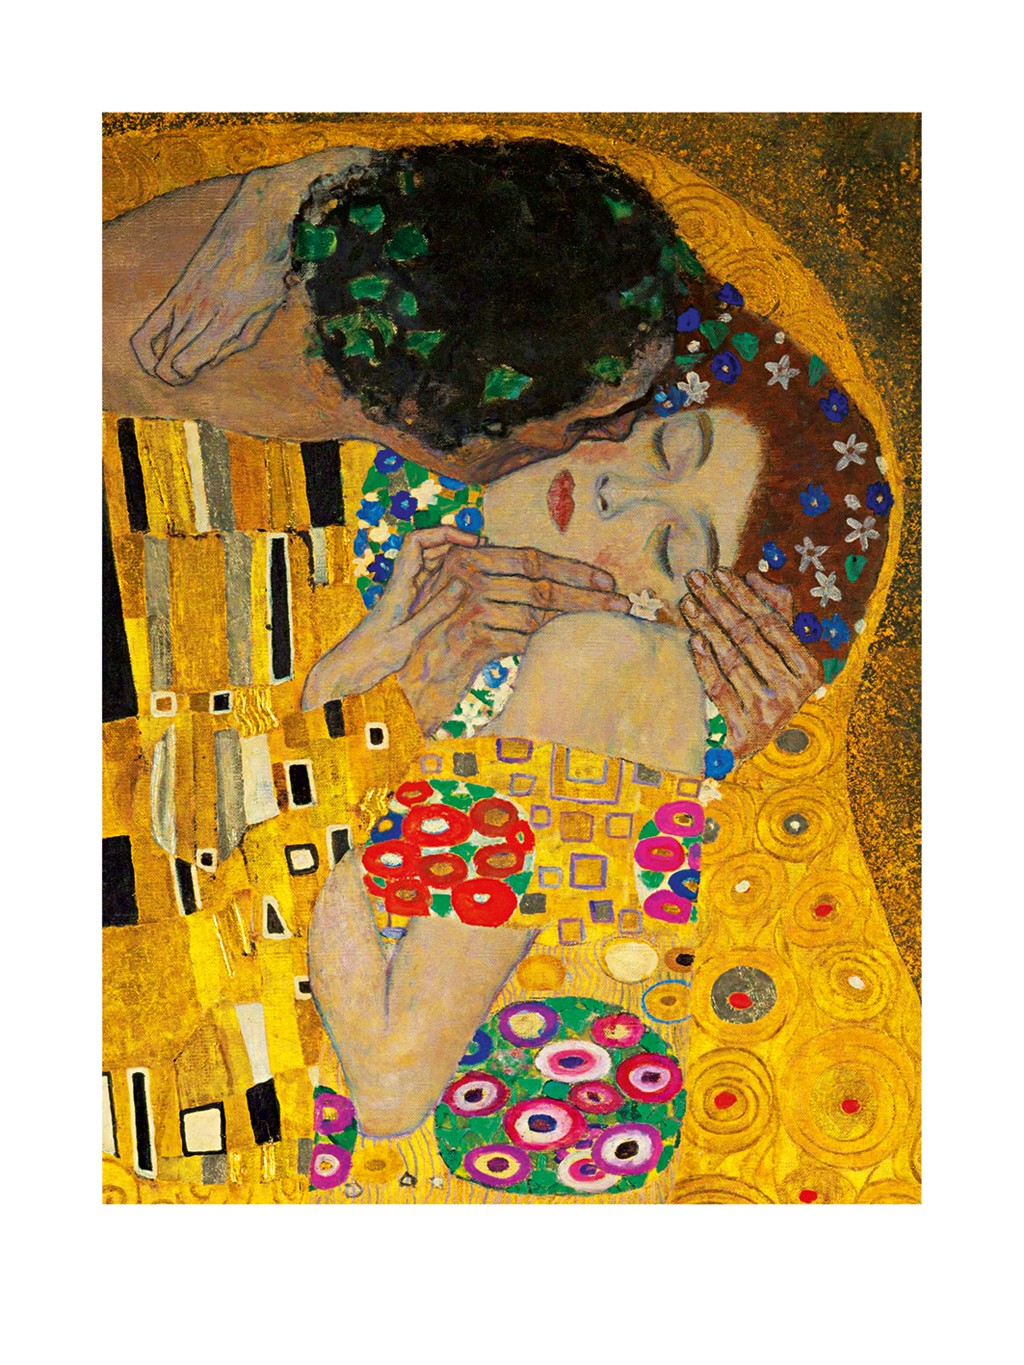 Gustav Klimt, Der Kuß (Ausschnitt) (Klassische Moderne,dekorativ, Jugendstil, Eros&People, Frau, Mann, Umarmung, Erotik, Ornamente, geometrische Formen, bunt, Wohnzimmer, Treppenhaus, Schlafzimmer, Malerei, ausschnitt, Detail)